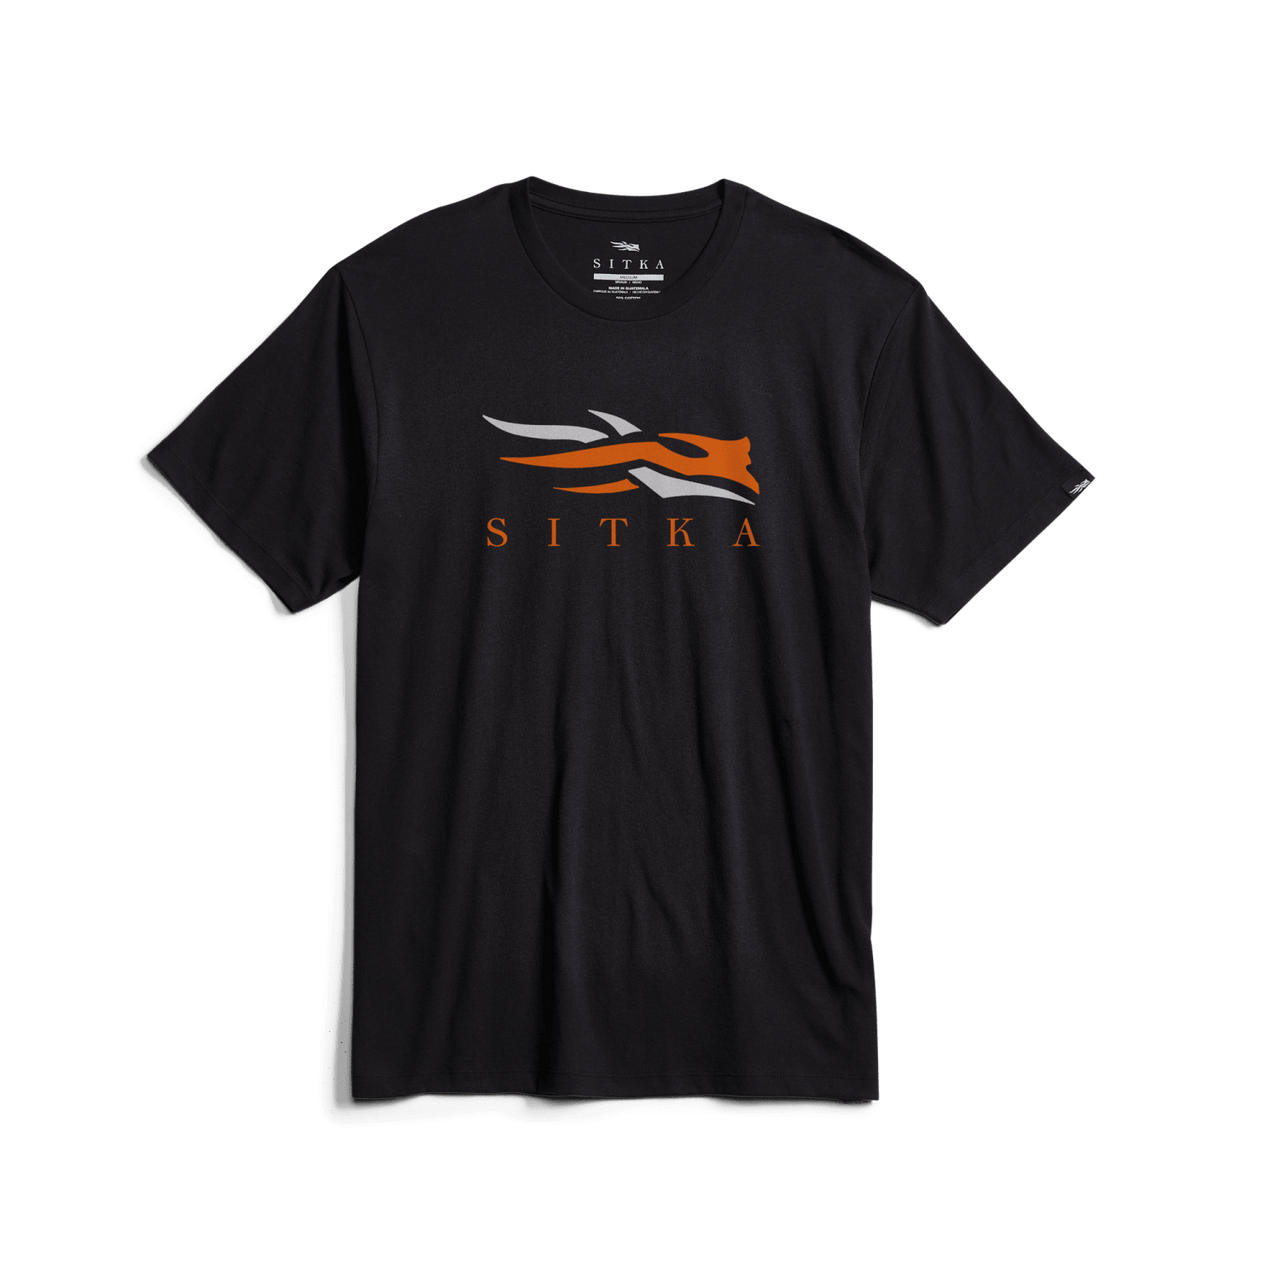 Ce t-shirt Icône est orné d'un logo "sitka" orange et blanc, ainsi que d'un graphique animal stylisé au-dessus du texte. Il est présenté sur un fond noir uni.